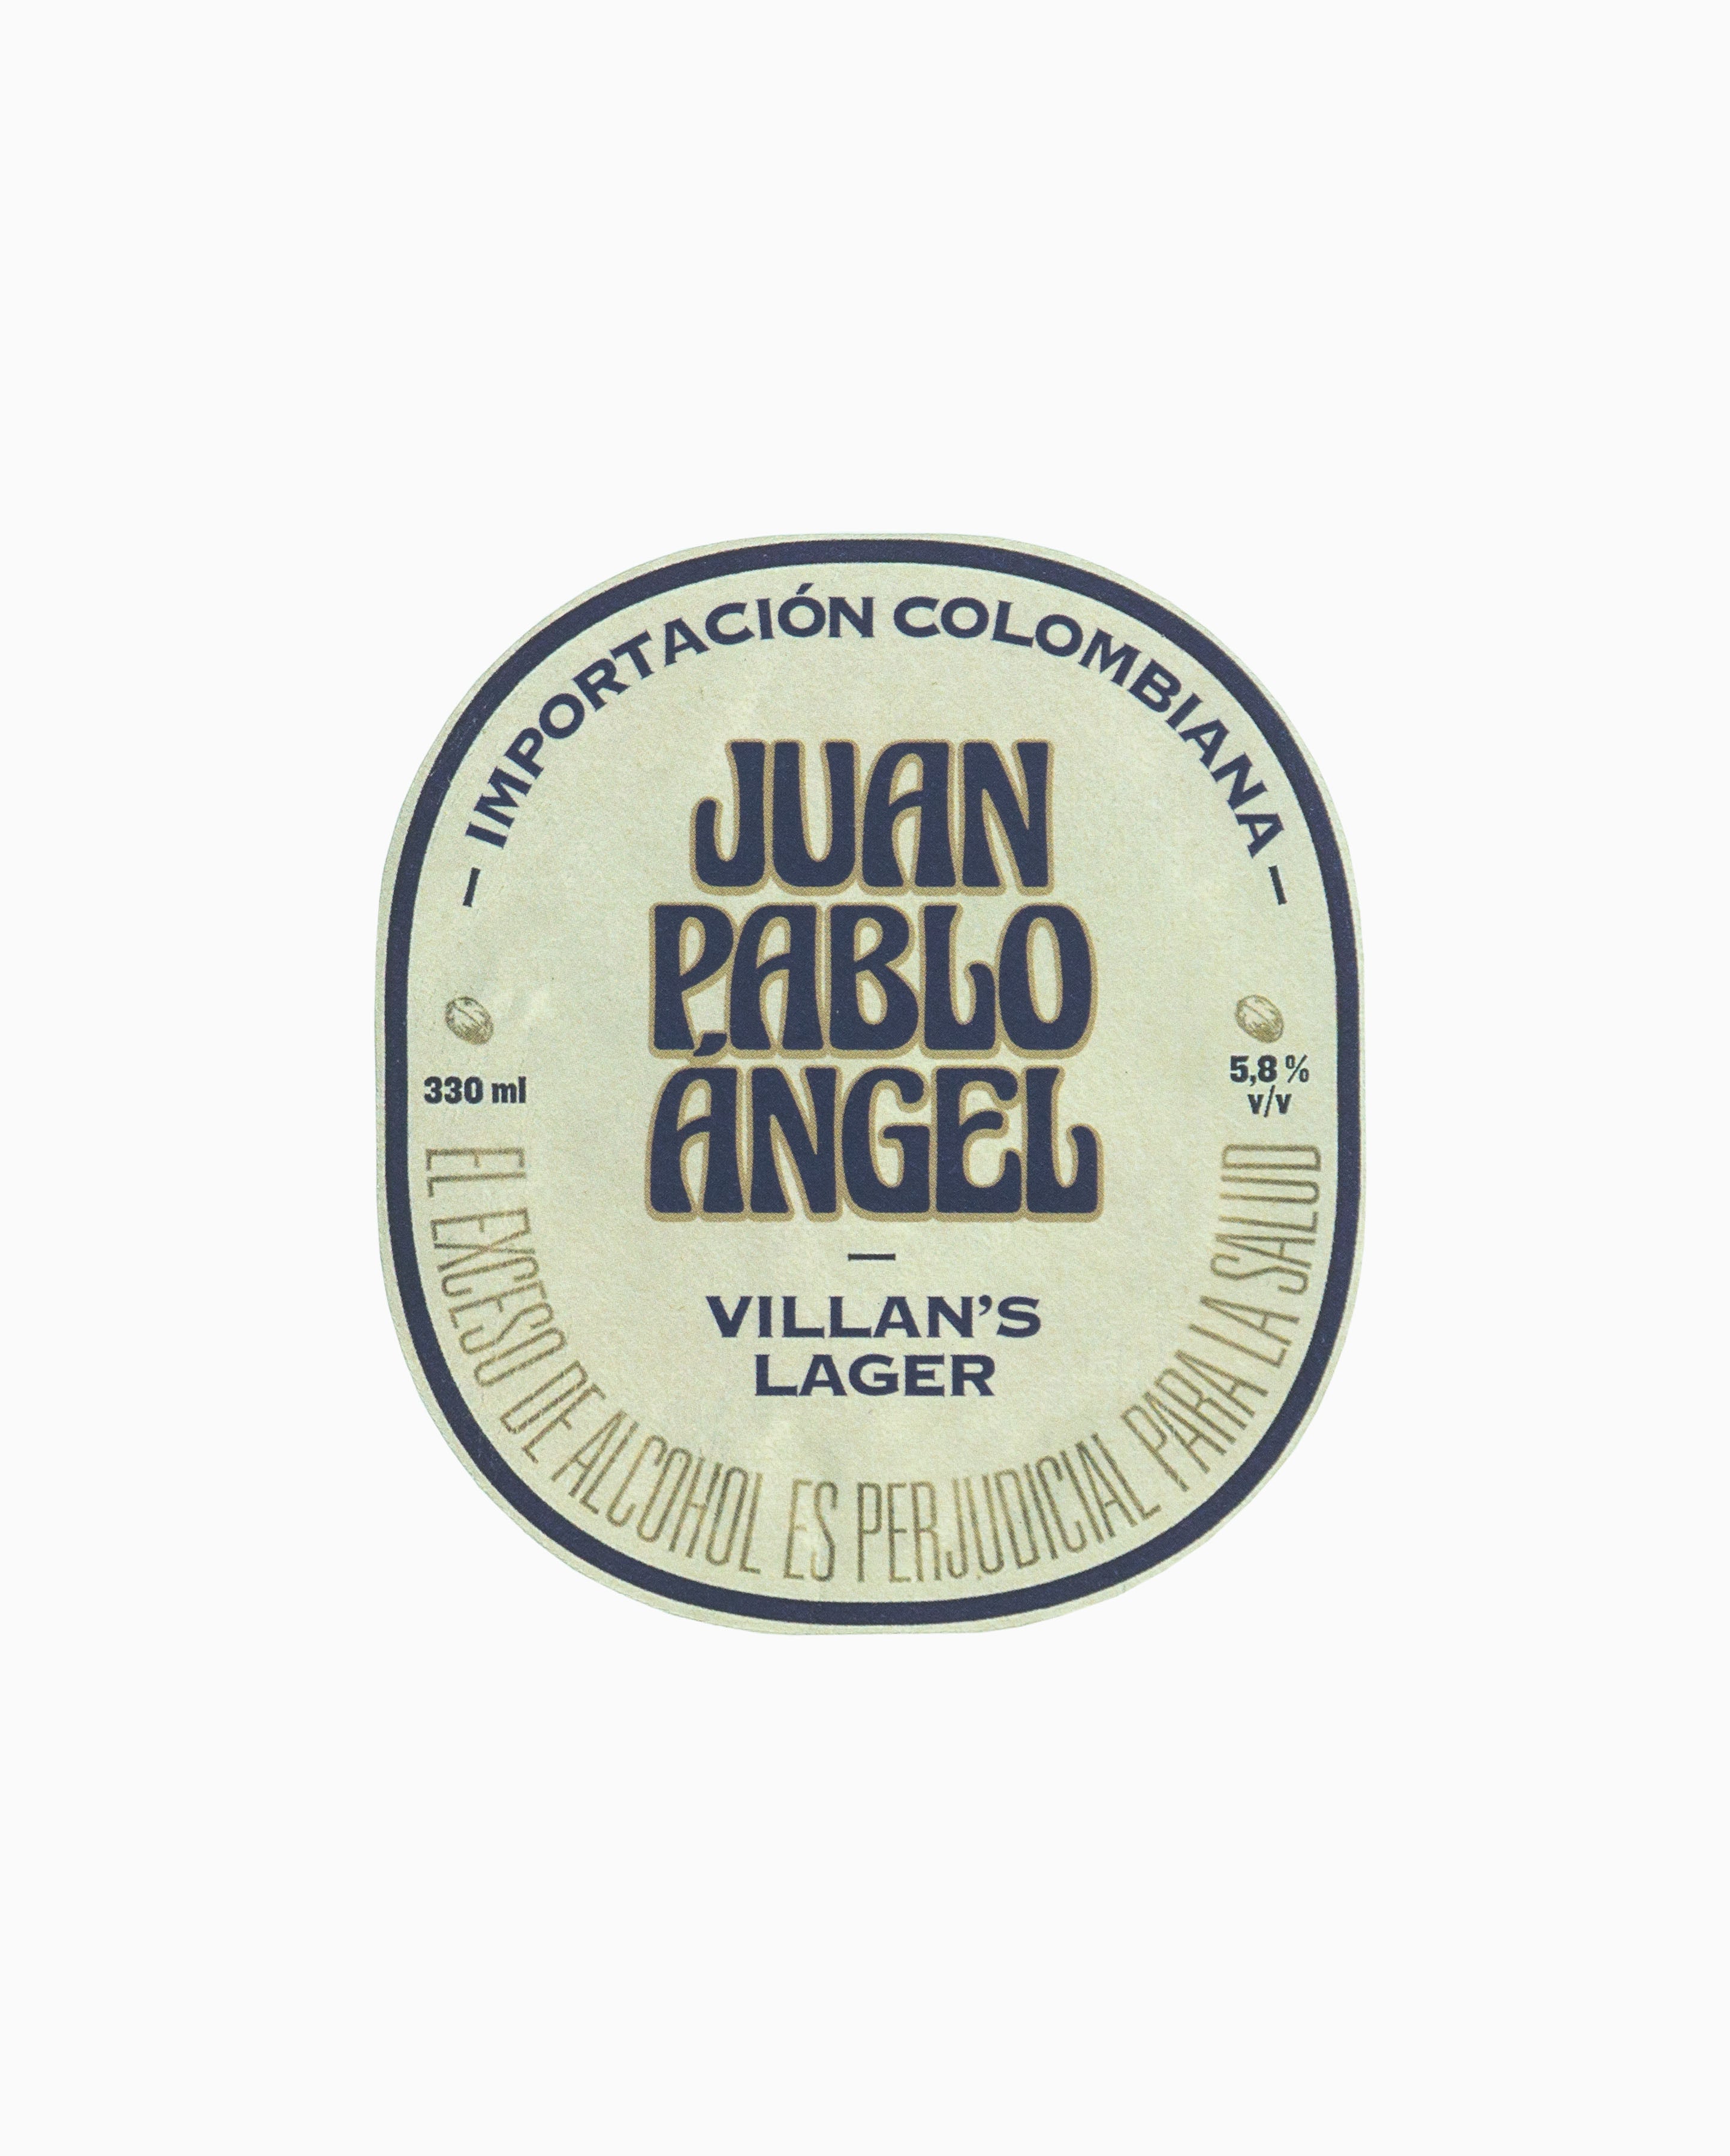 The Villans Brewery - Beer Mats